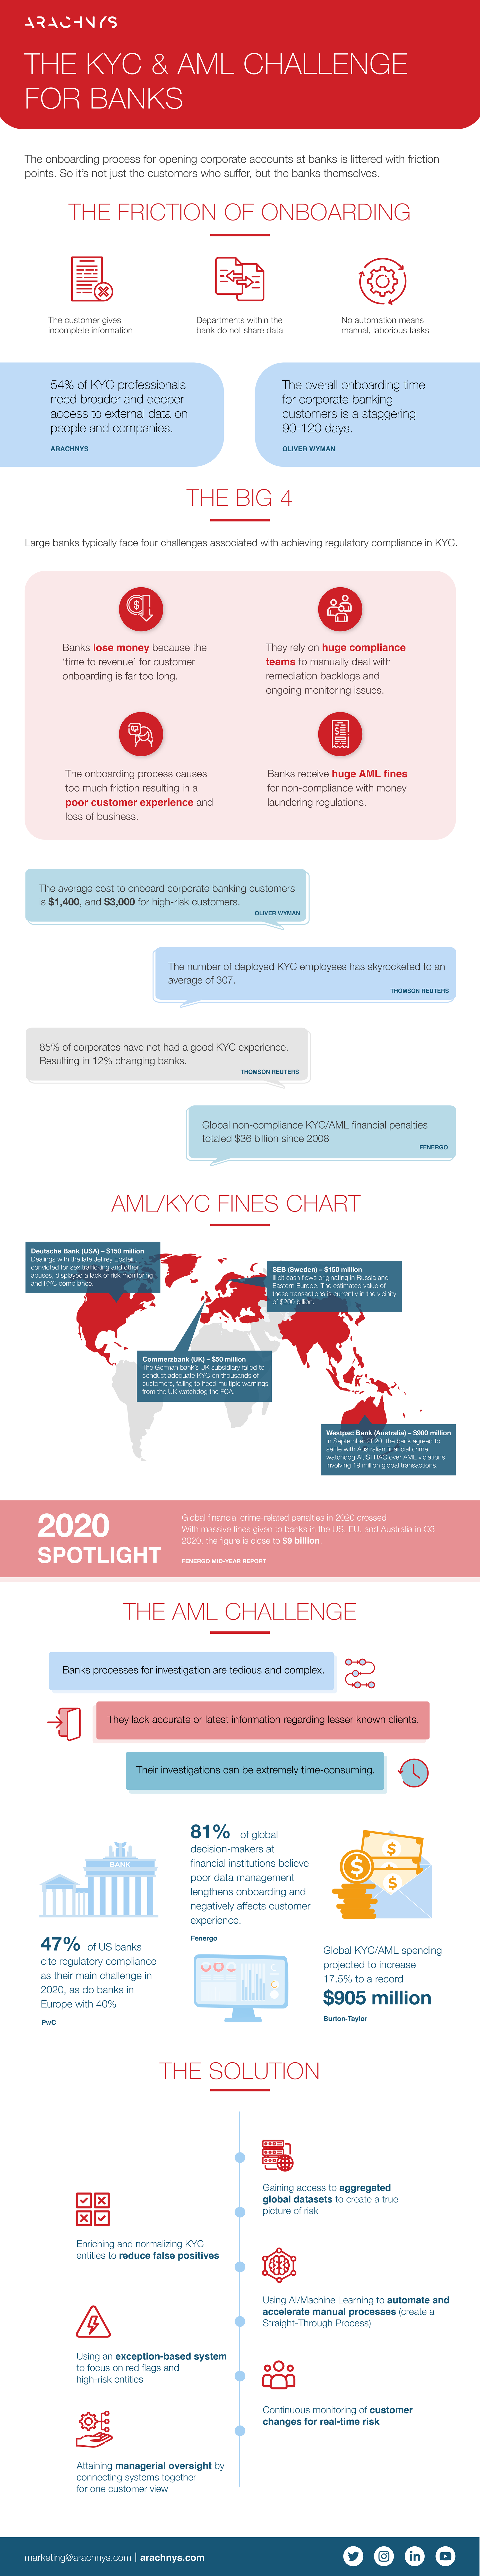 Arachnys_AMLchallenge_Infographic